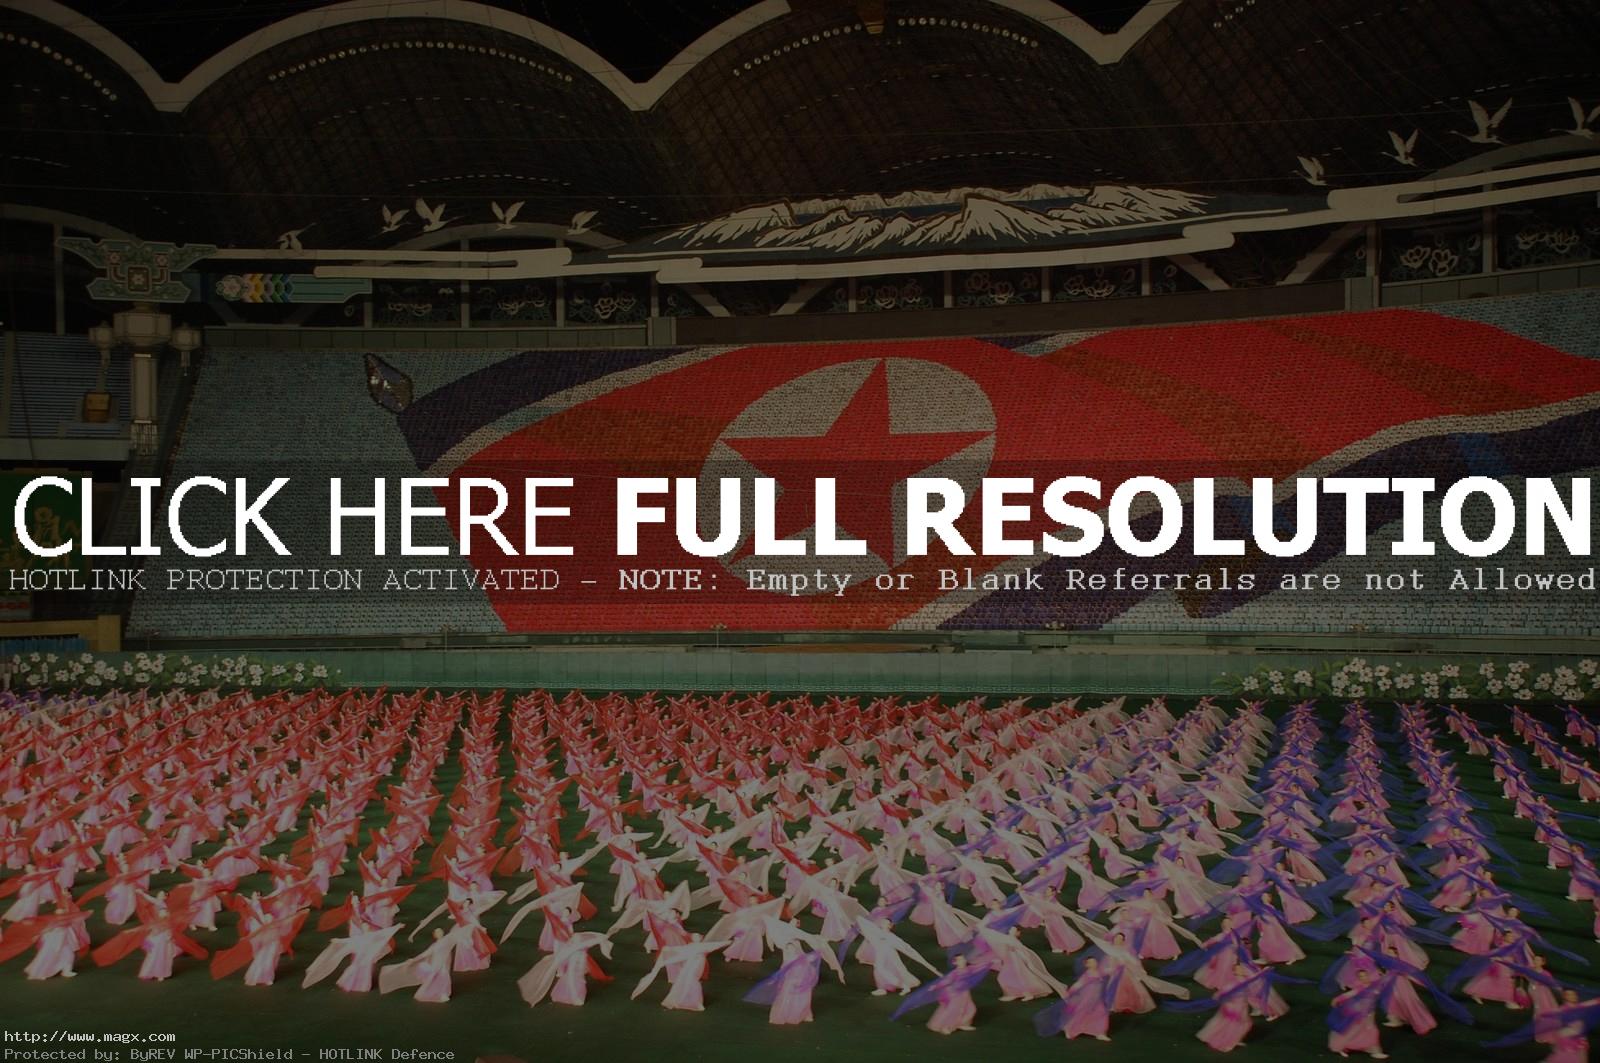 arirang North Korea   Arirang Festival aka Mass Games